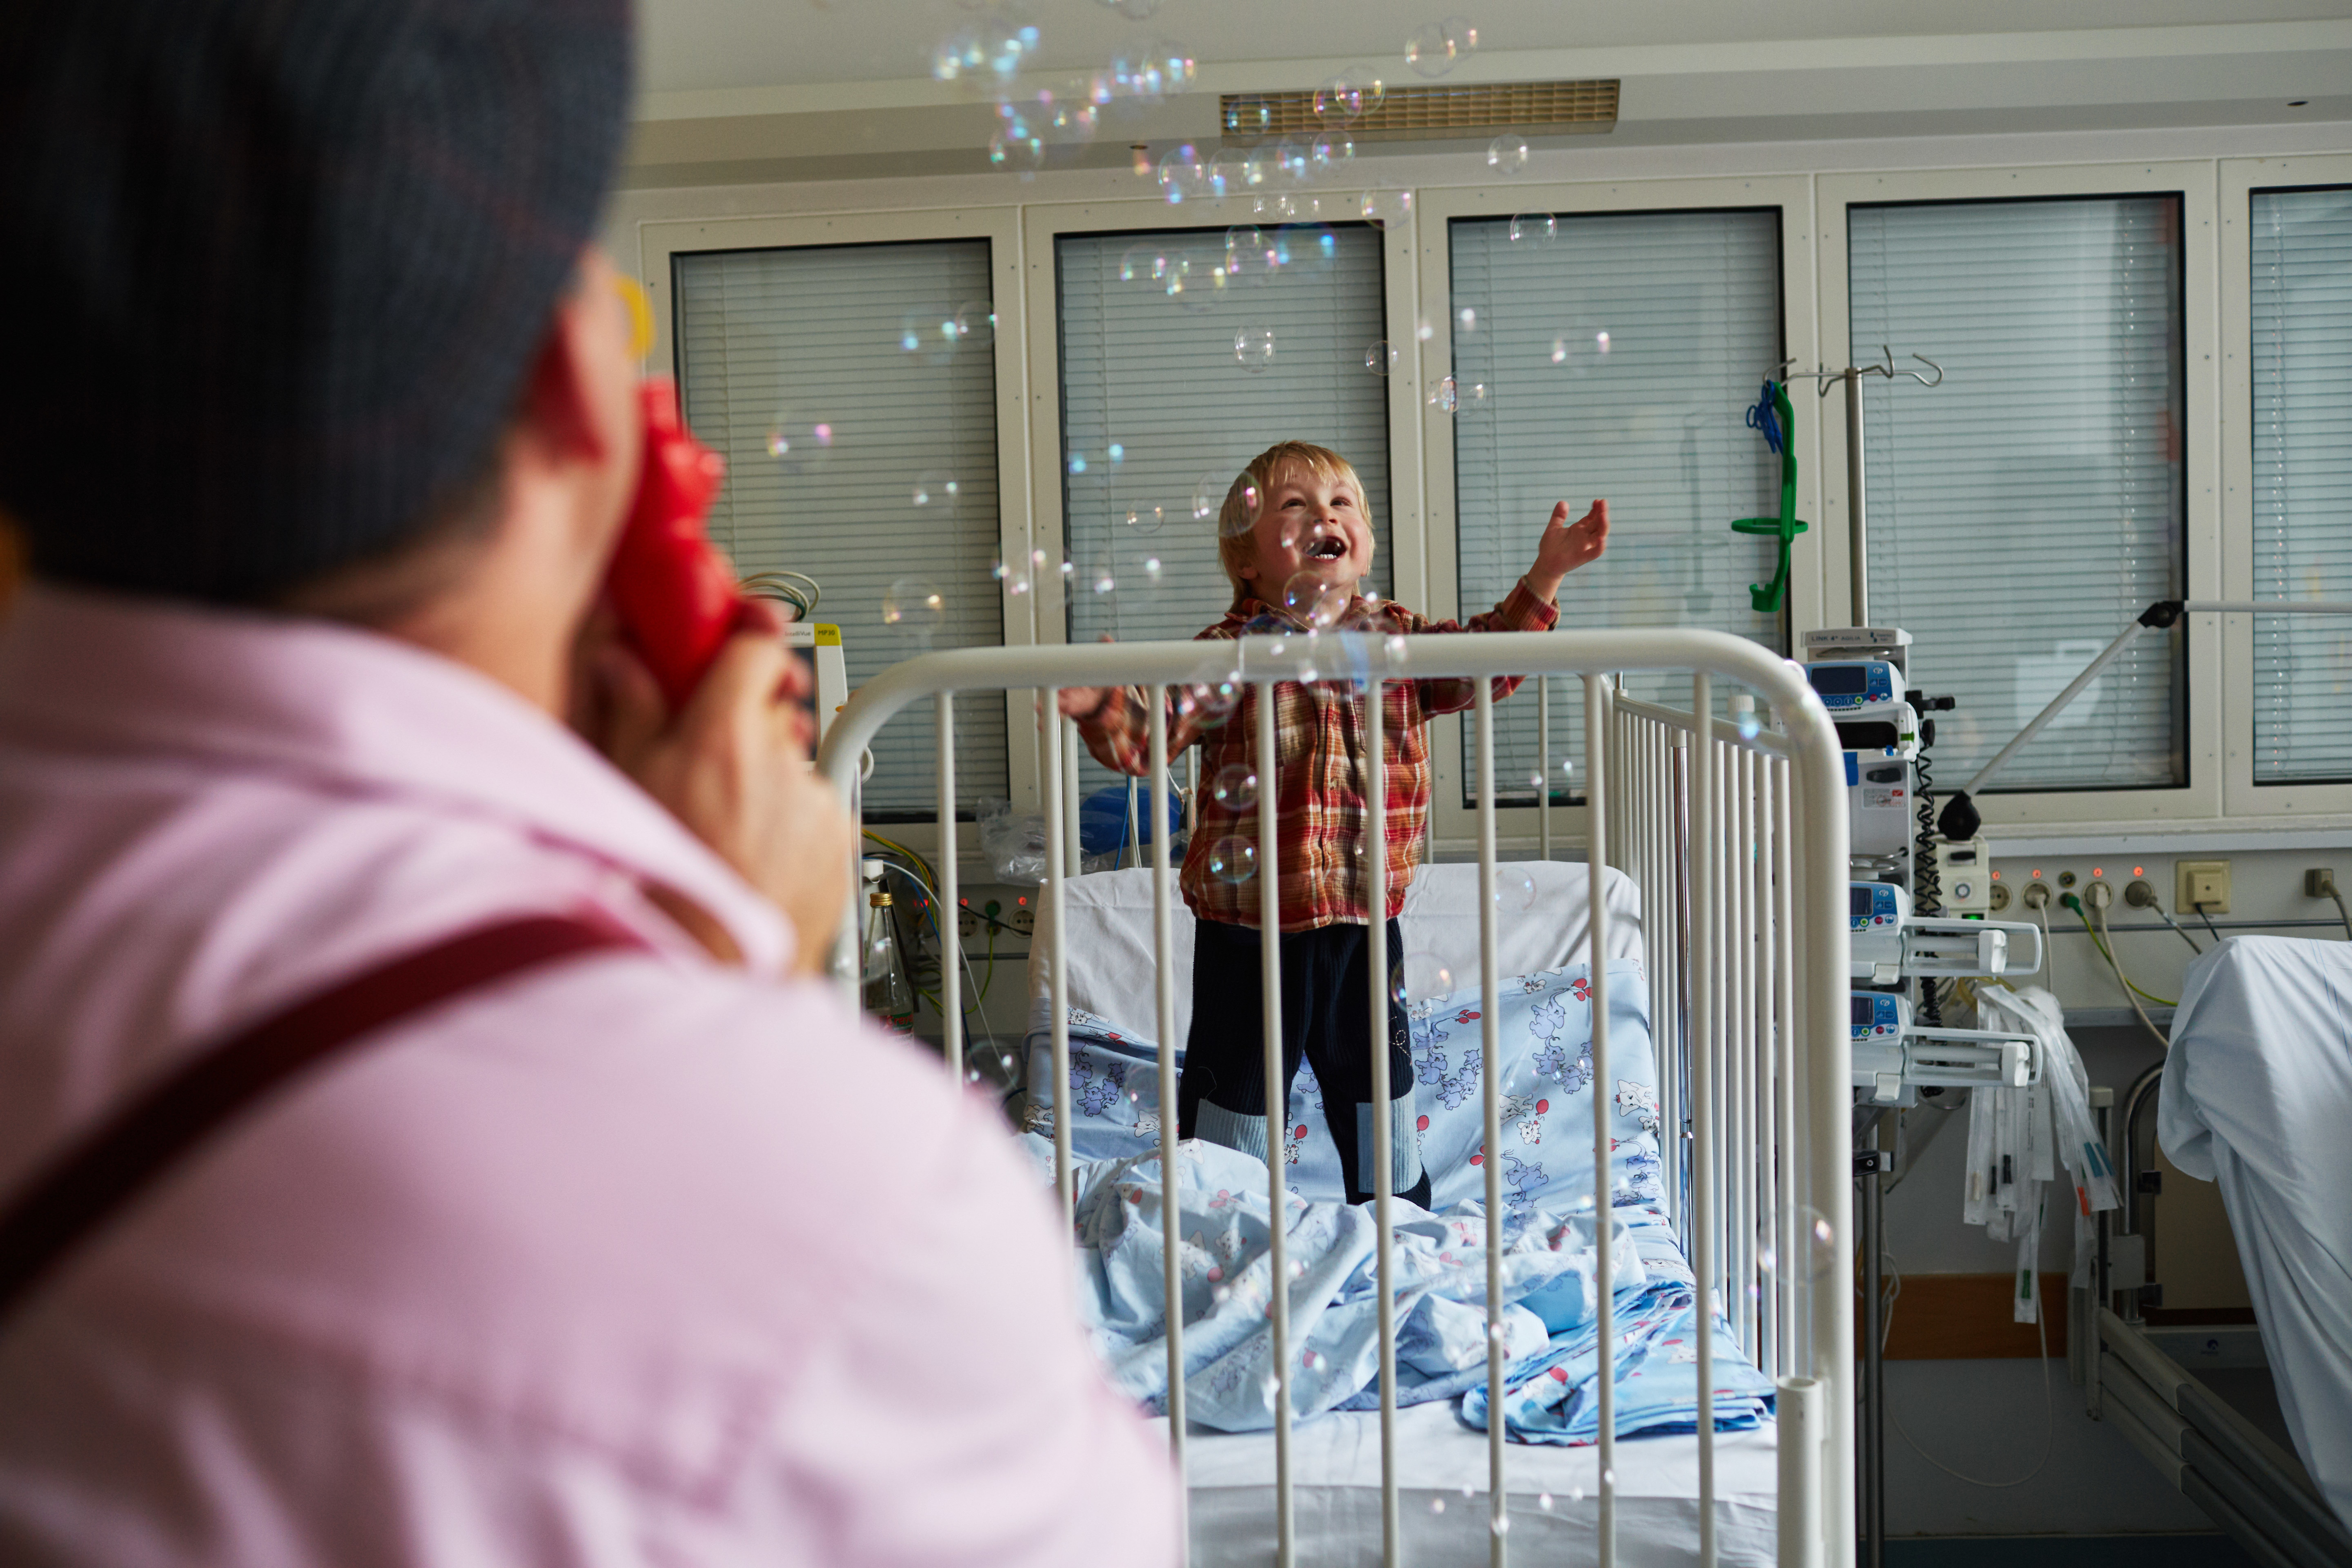 Ein Clown pustet ganz viele kleine Seifenblasen in ein Krankenzimmer von einem kleinem Jungen, der versucht nach ihnen zu greifen 